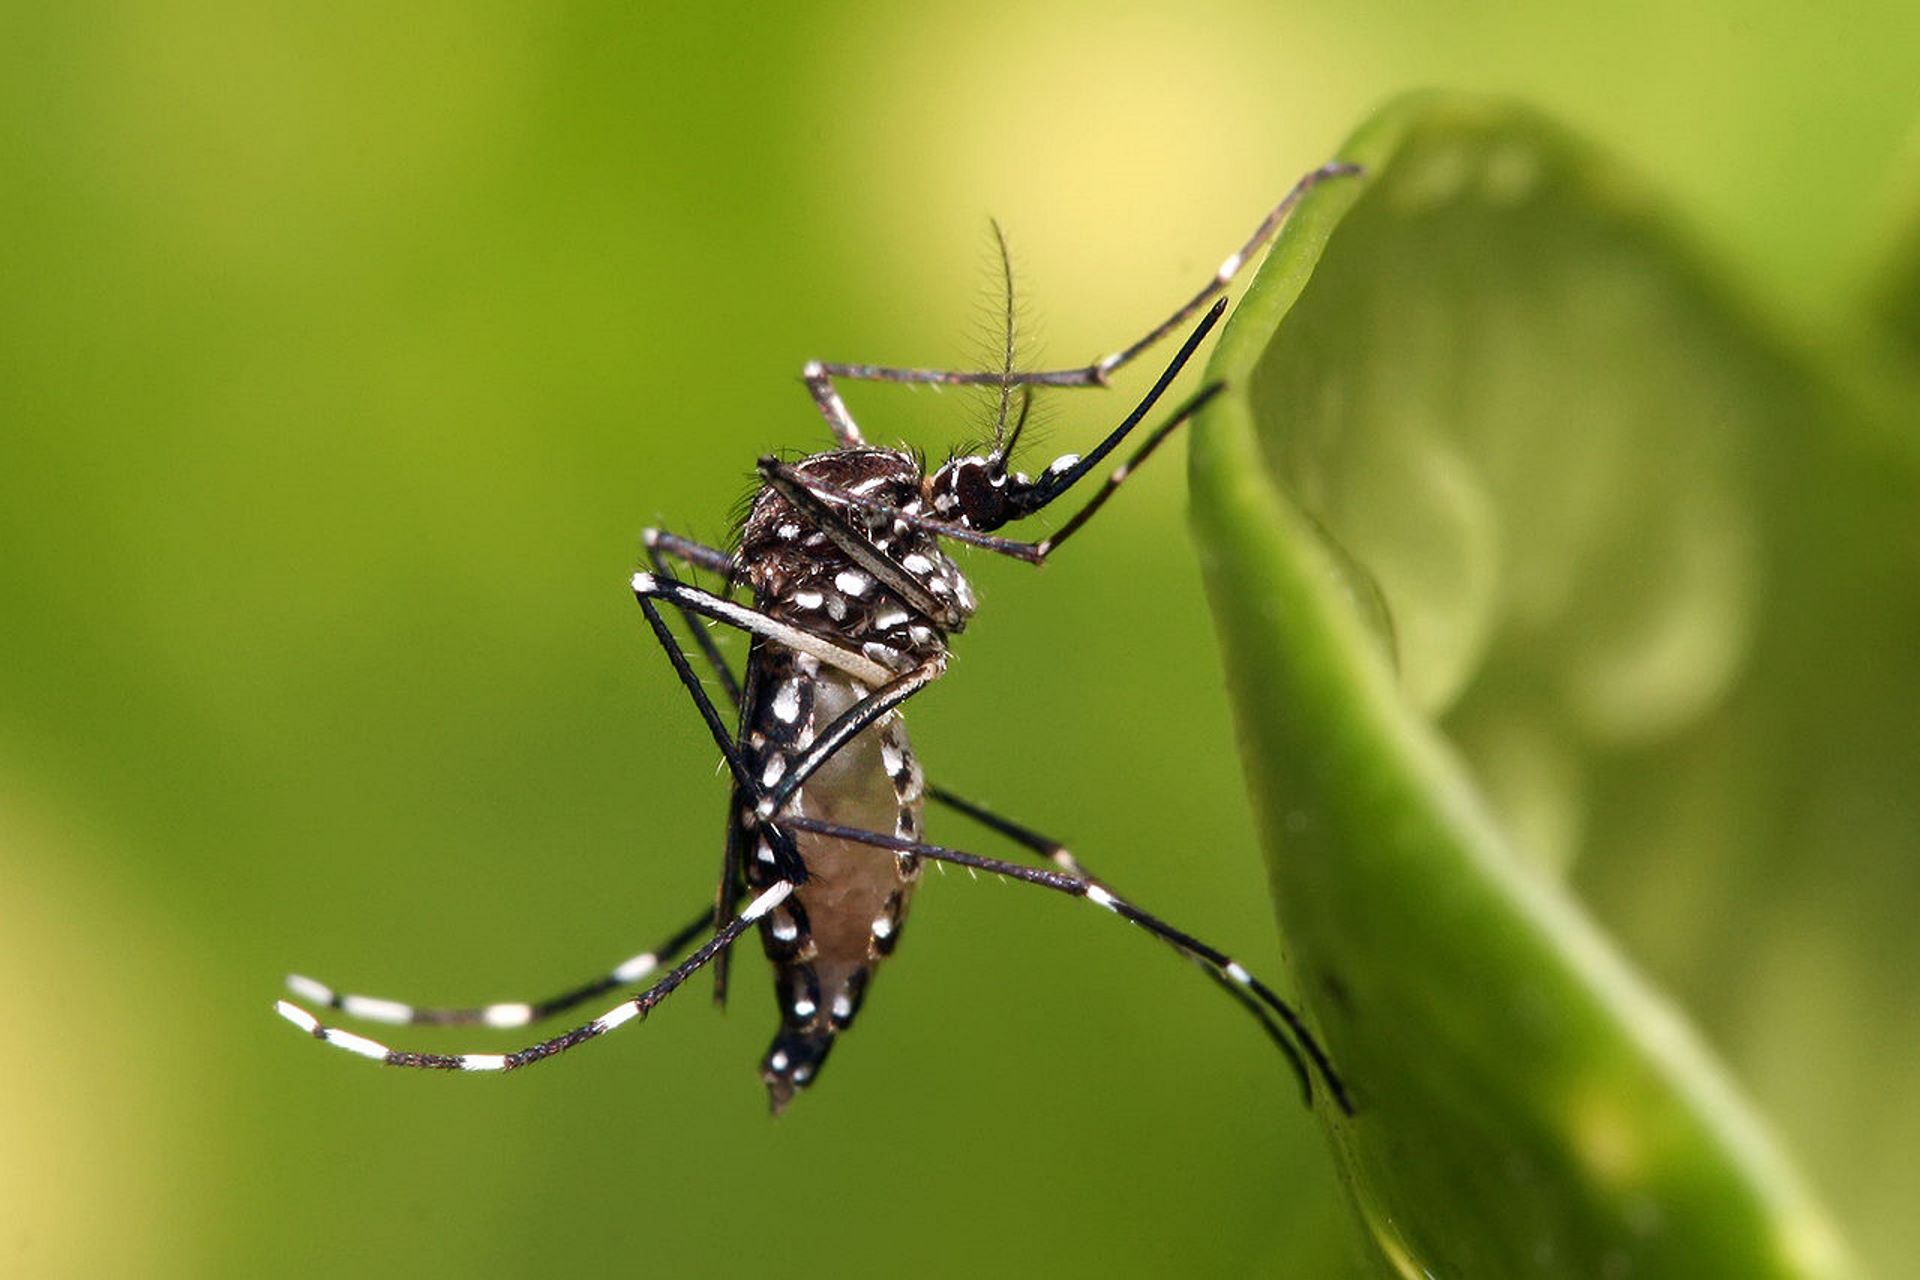 O Aedes aegypti é um exemplo de espécie exótica invasora que causa grande impacto na economia brasileira. Foto: Muhammad Mahdi Karim/Wikimédia.